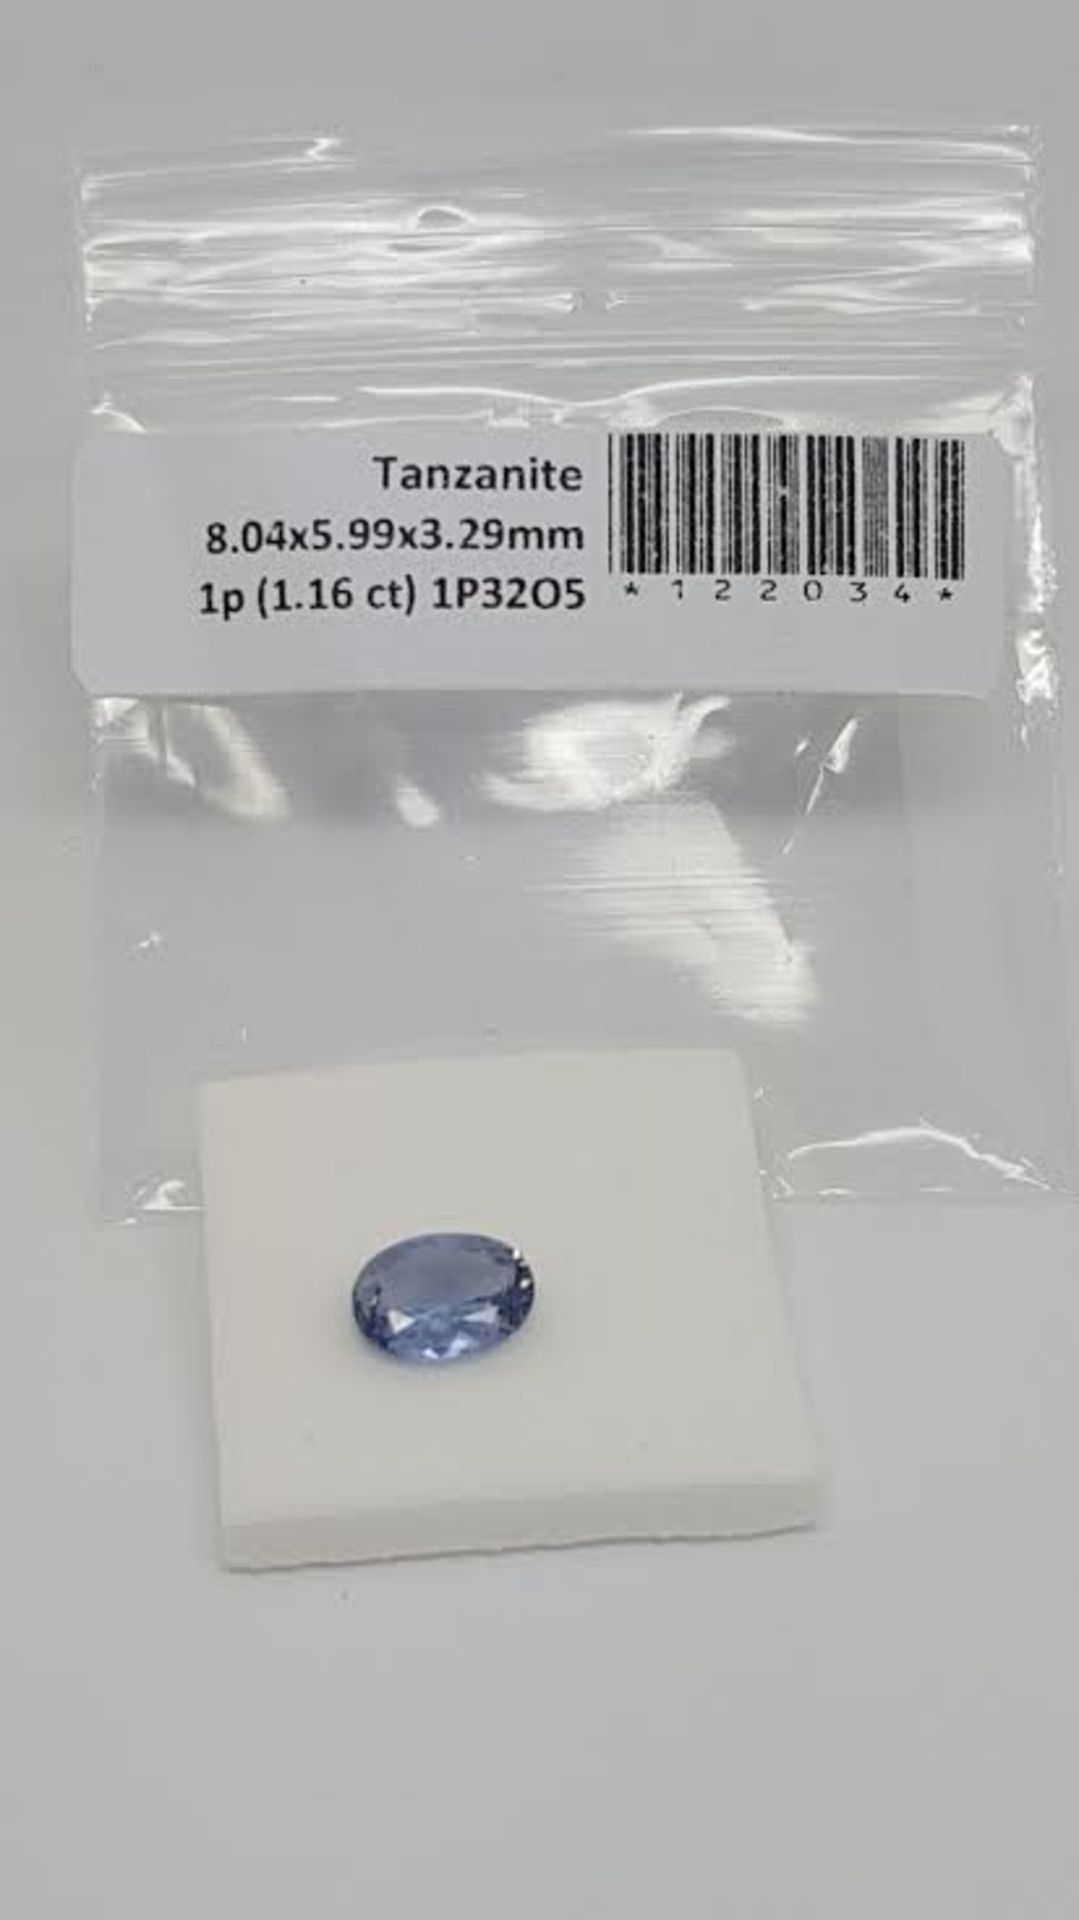 1.16 ct natural loose tanzanite